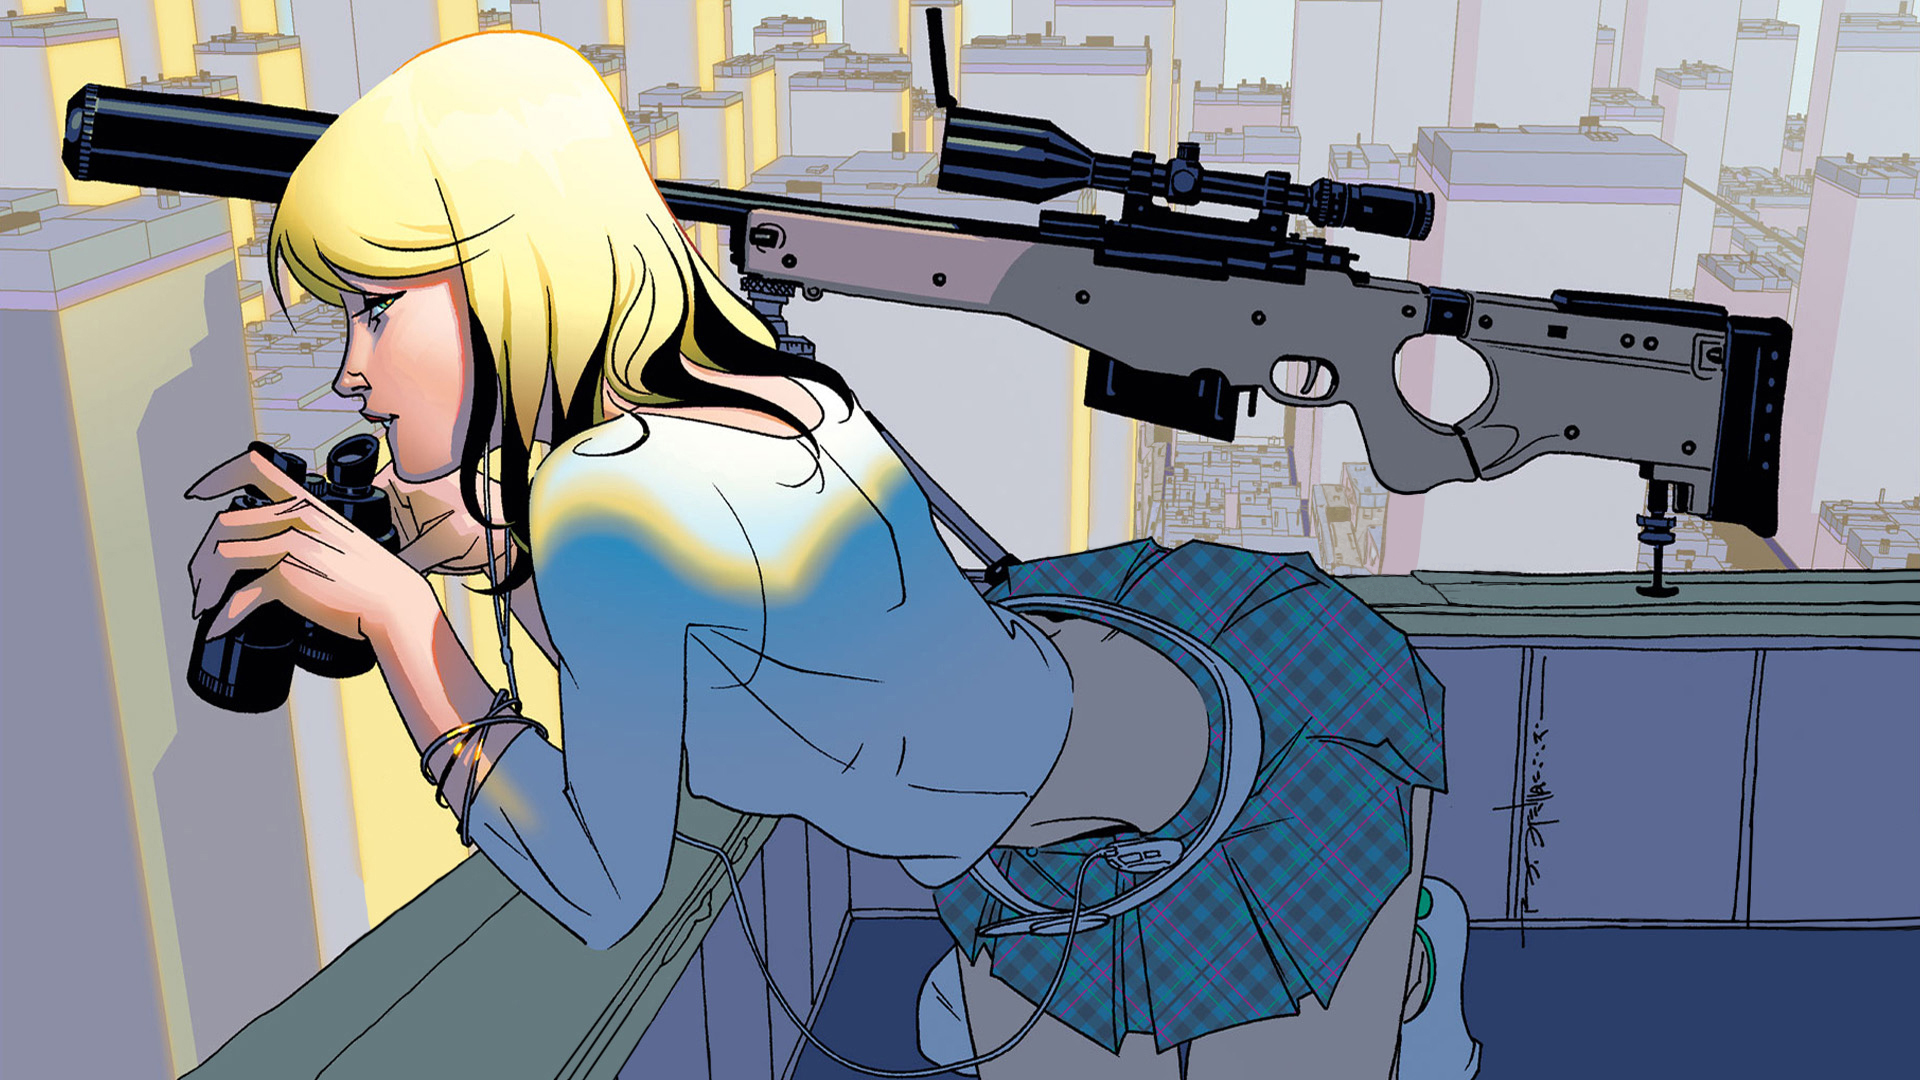 блондинки, снайперские винтовки, крыши, мини-юбки, аниме, бинокль, склонность, L- 96 - обои на рабочий стол